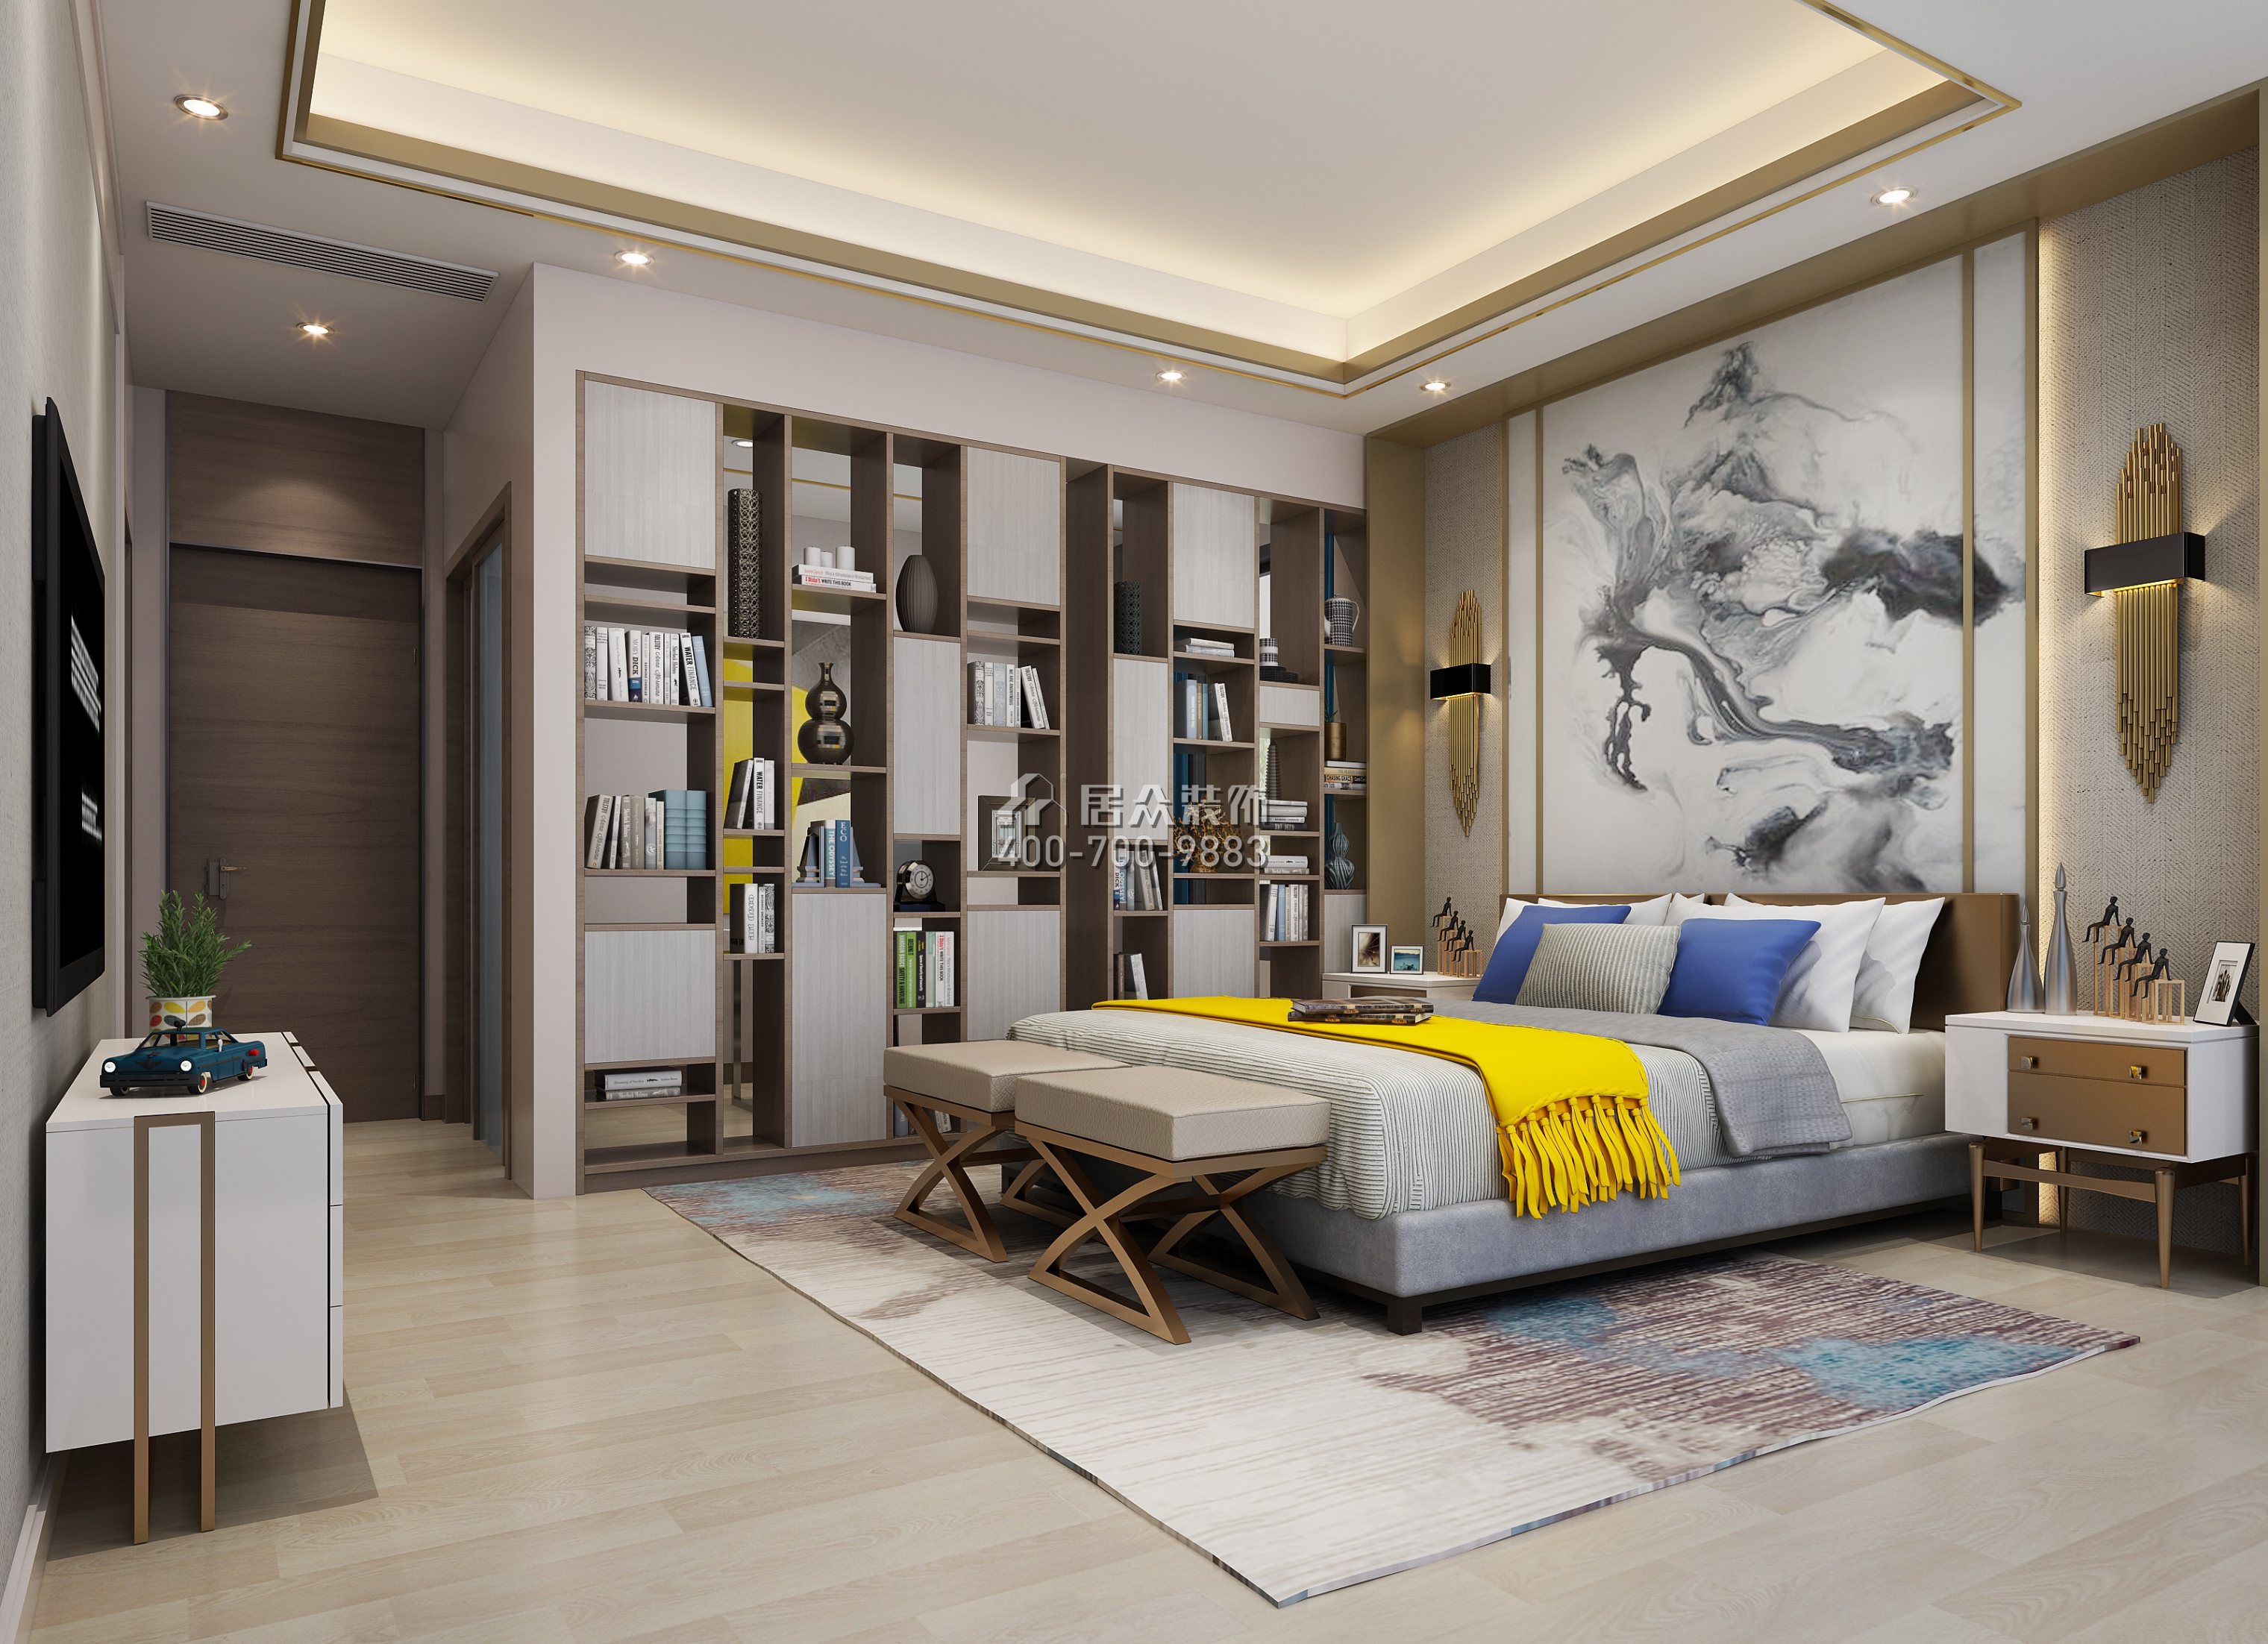 鼎峰尚境600平方米現代簡約風格別墅戶型臥室裝修效果圖